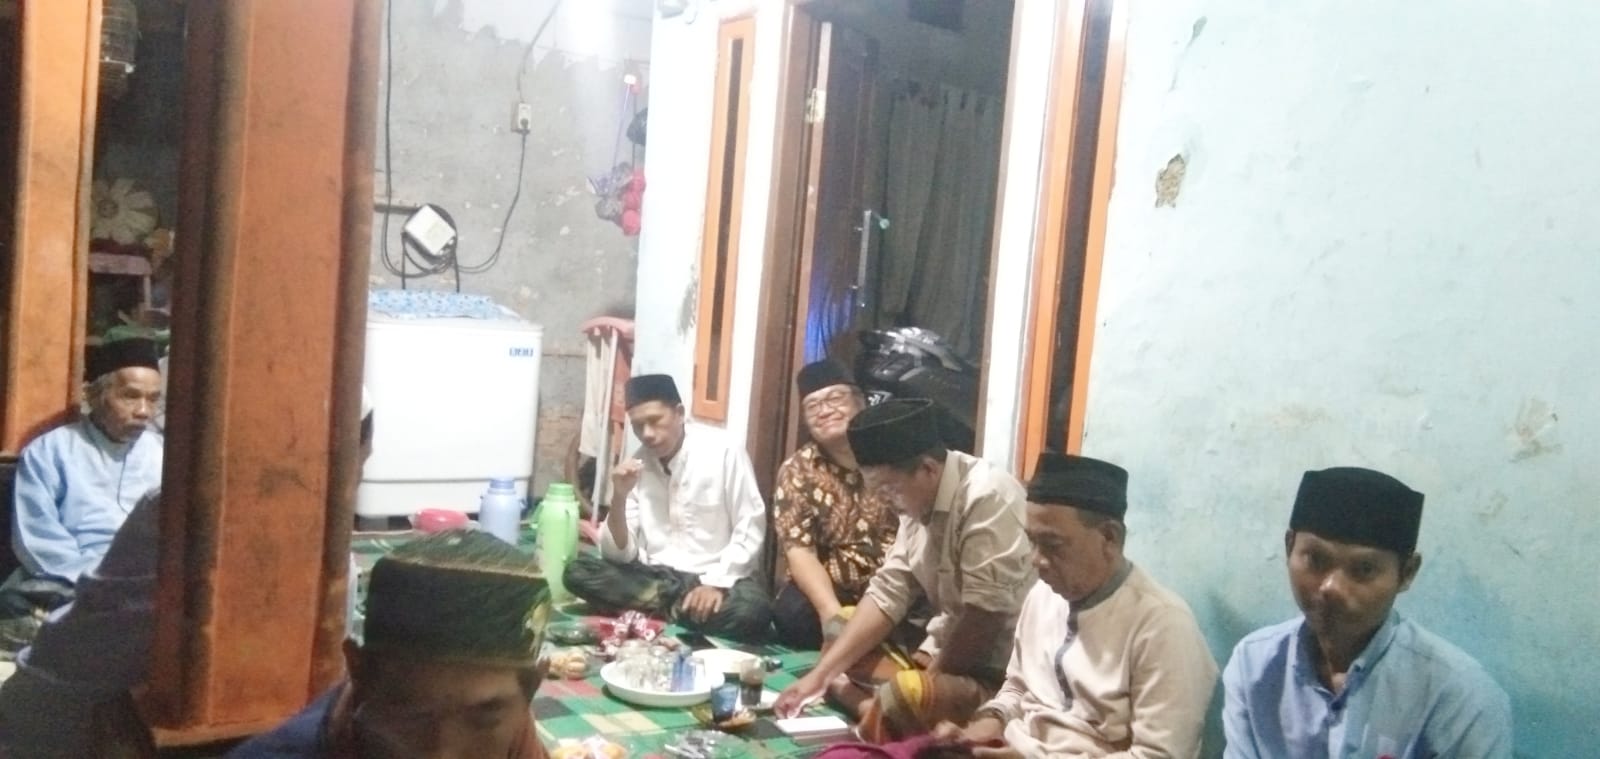 Pengajian Bulanan Di Kp. Blok Pesar Pasar Rebo Desa Babakan Bogor.